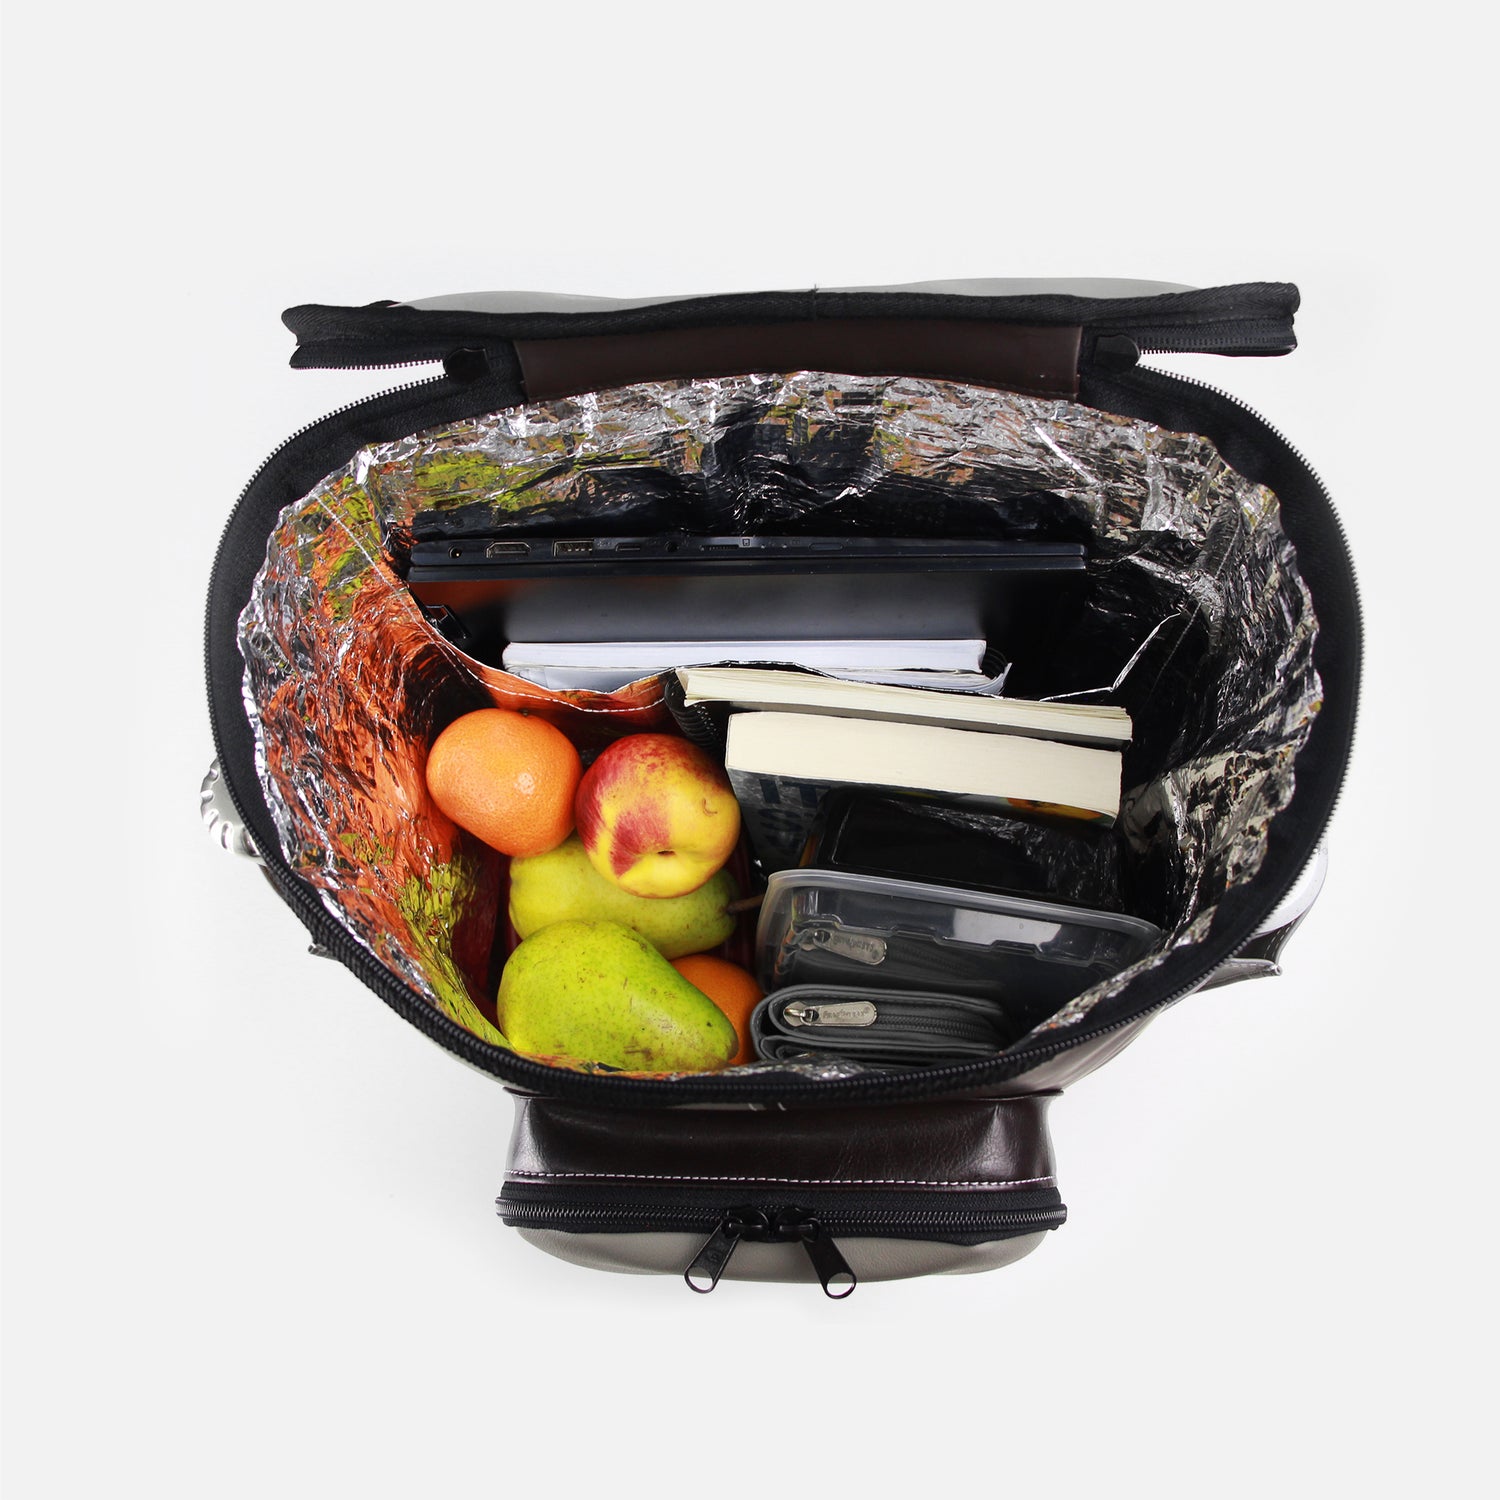 Intérieur du sac rempli de fruits, plat, livres et ordinateur